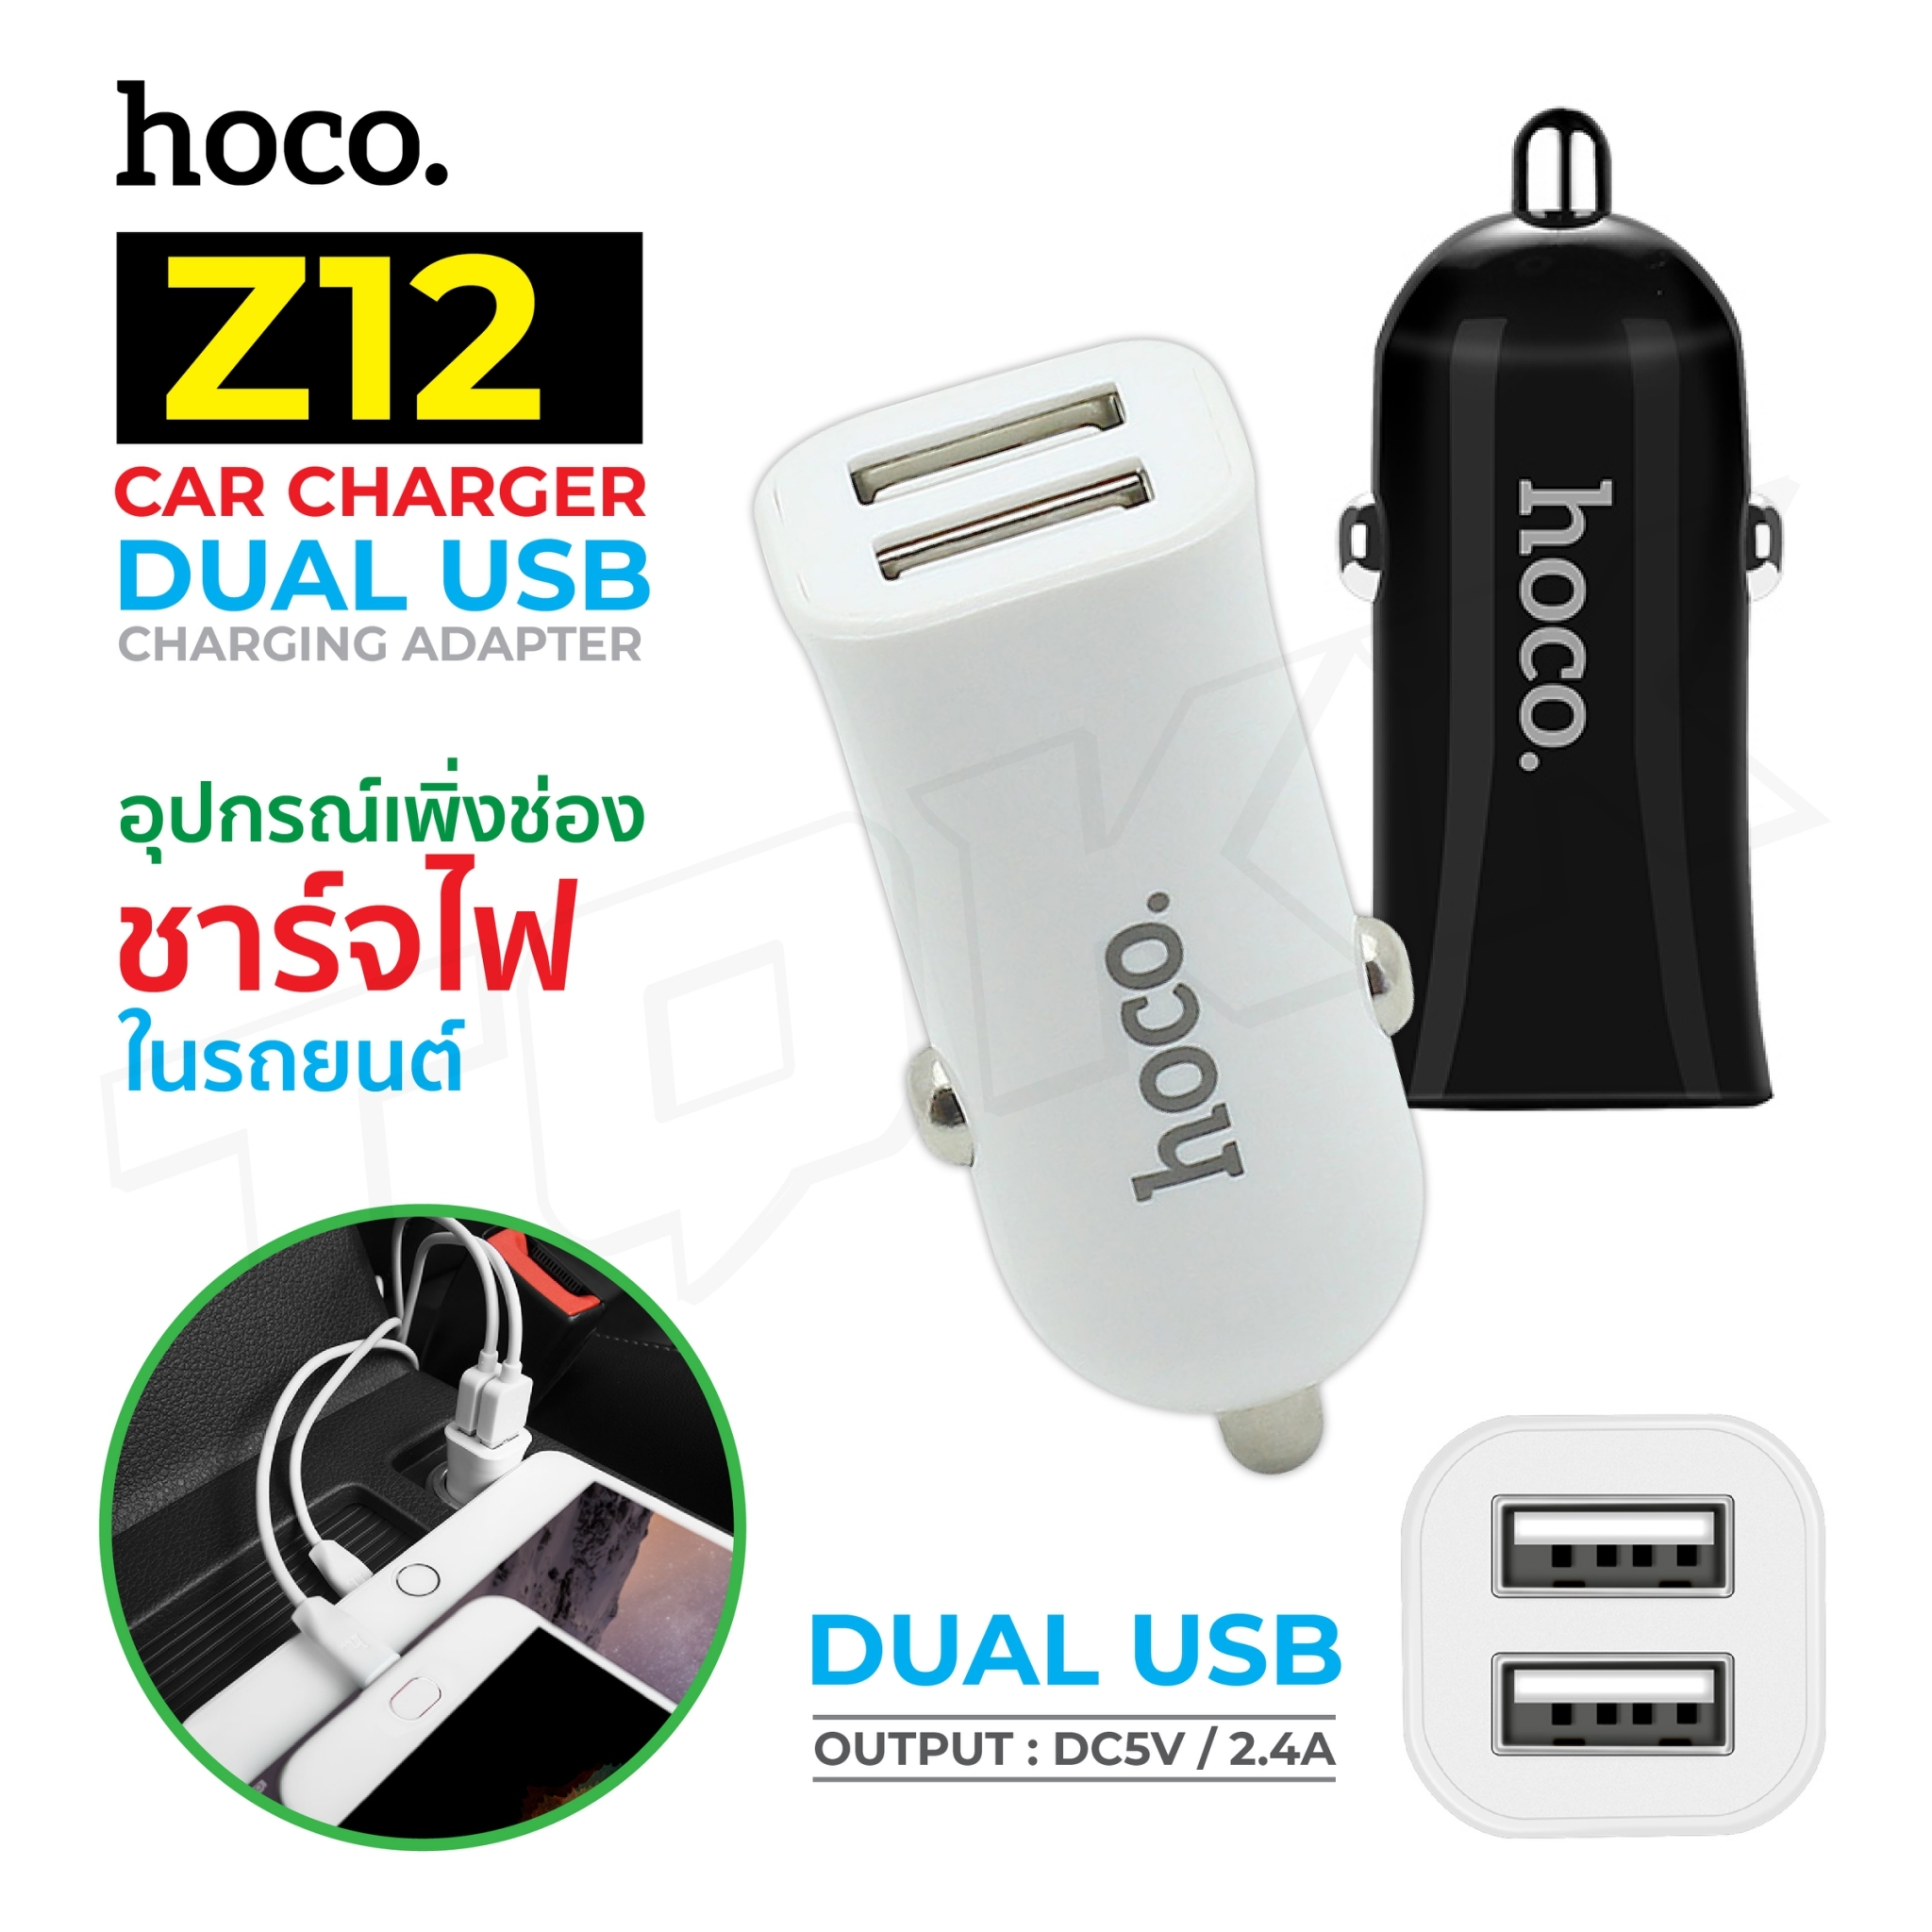 HOCO Z12 ของแท้ 100% Car Charger DUAL USB 2 port 5V/2.4A หัวชาร์จในรถยนต์ ที่ชาร์จในรถชาร์จเร็วแบบ 2 USB BIG SALESALE